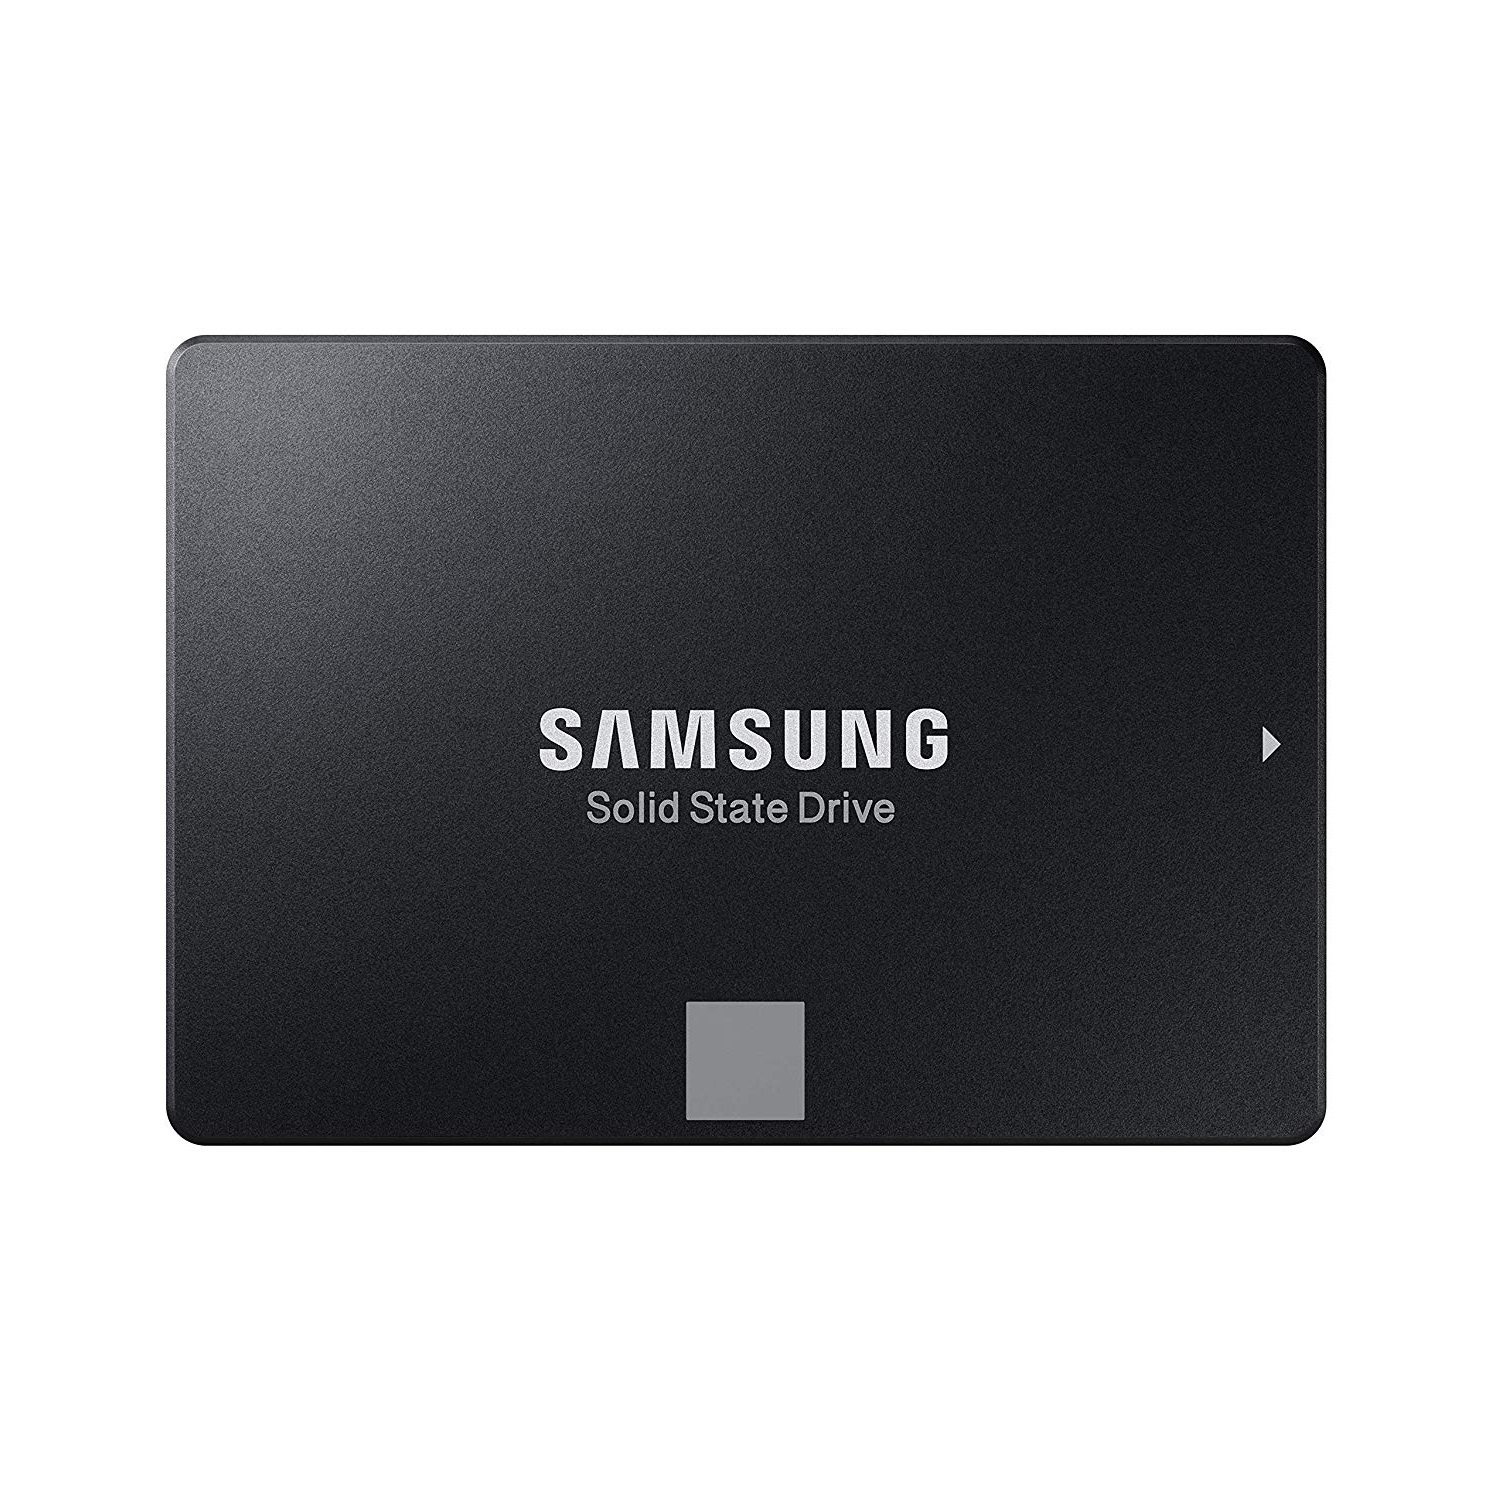 近期好价！【中亚Prime会员】Samsung 三星 860 EVO SSD SATA 2TB固态硬盘 到手价1768元 